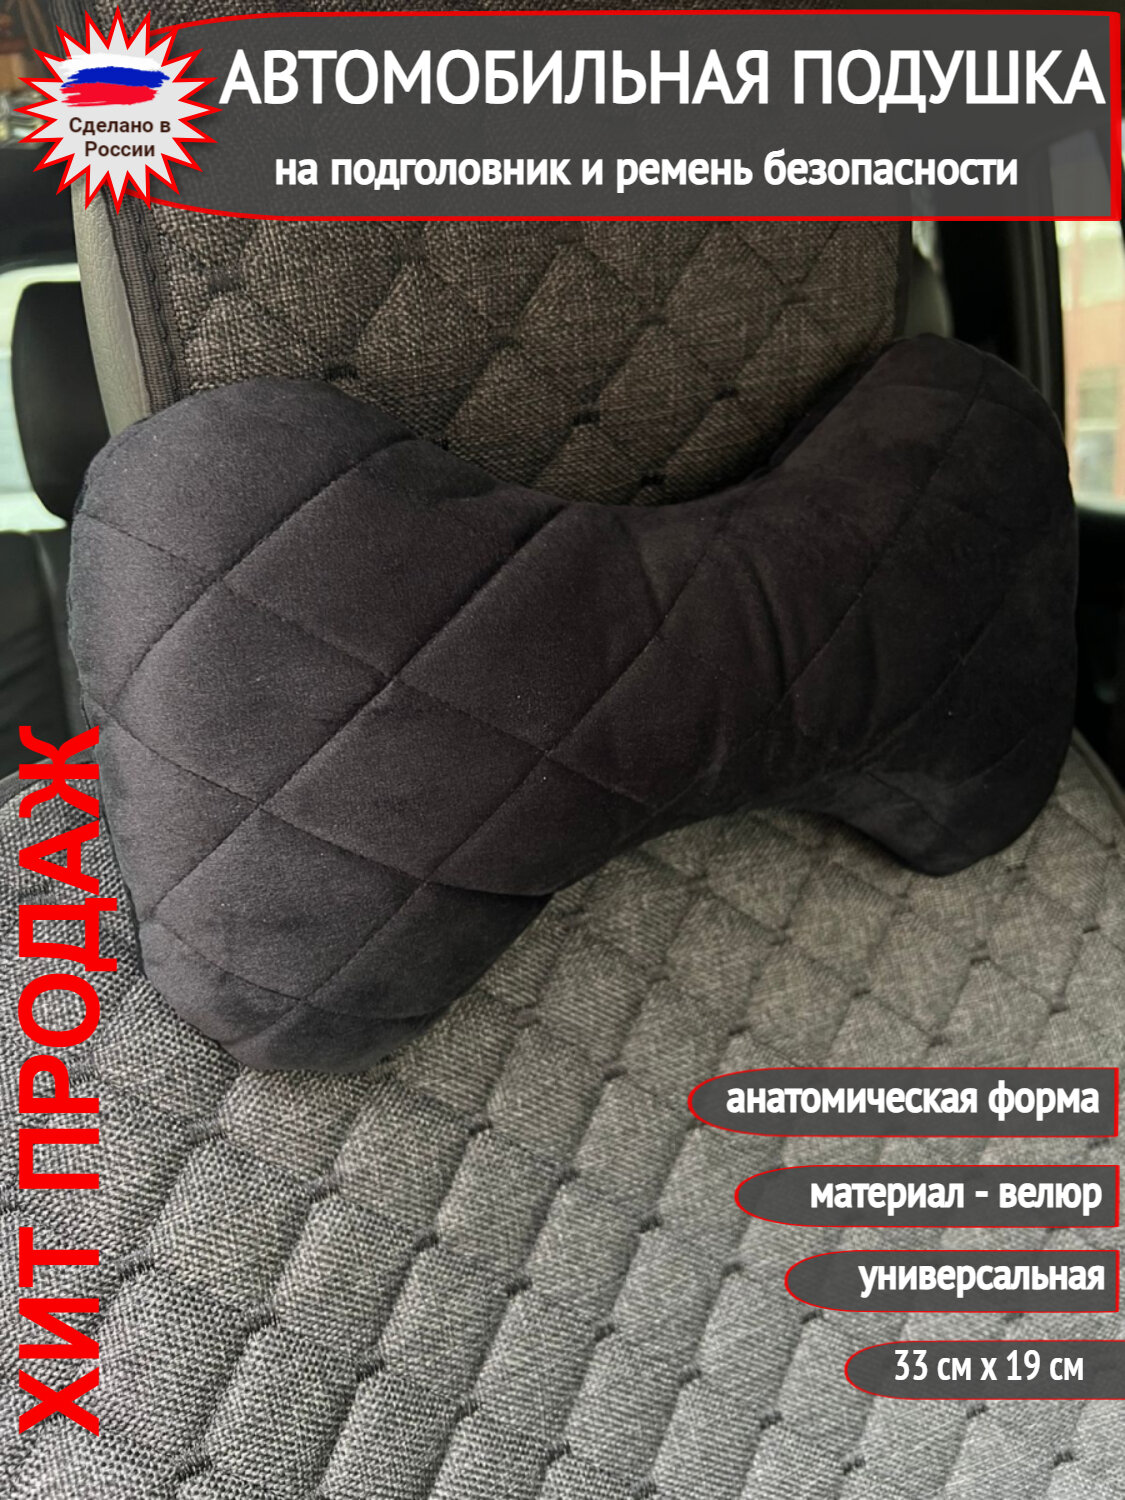 Автомобильная подушка-косточка Autozoom на подголовник и ремень безопасности из серебристого велюра